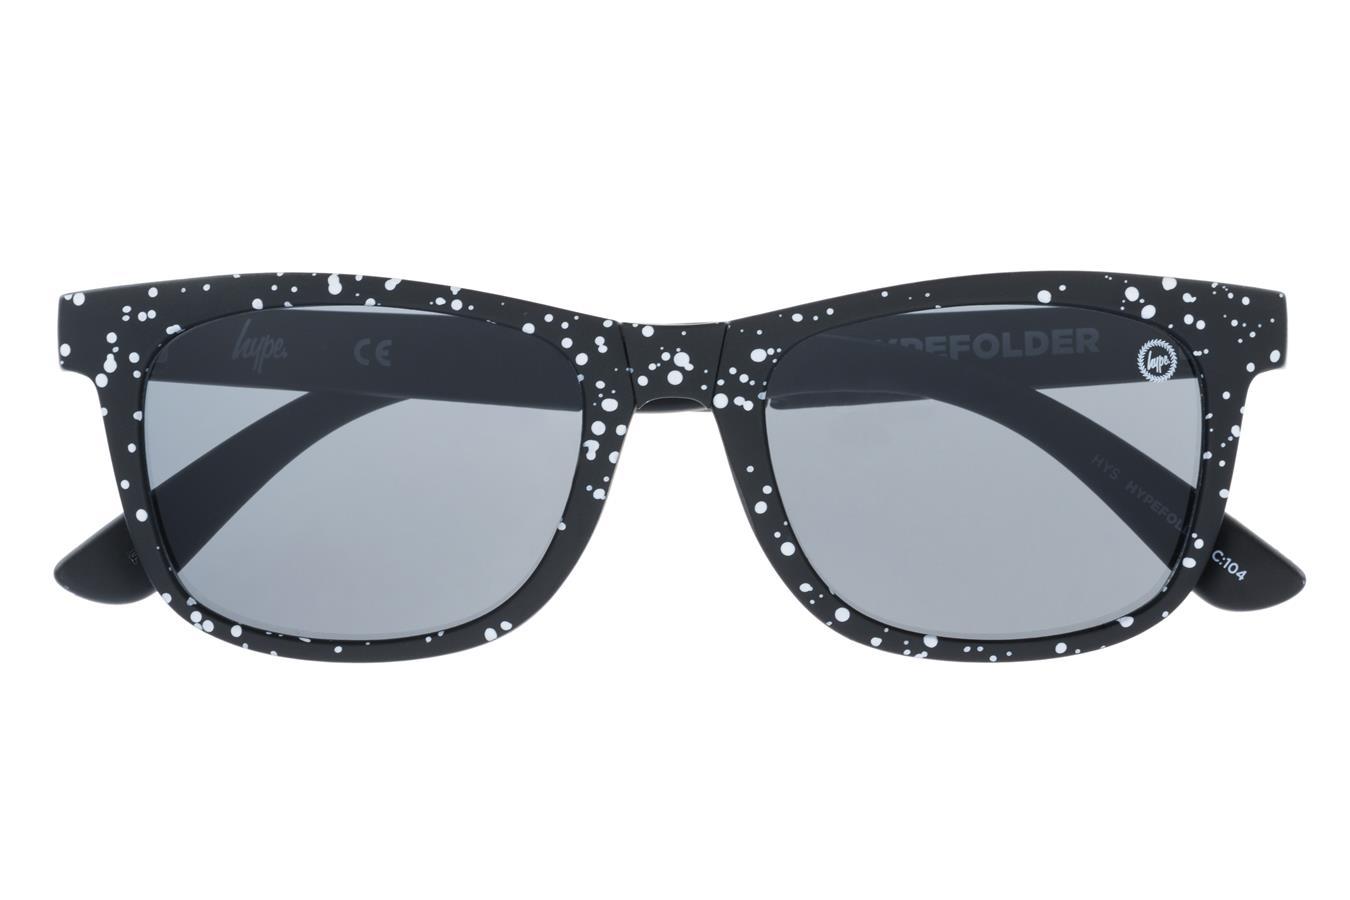 Hype Black Speckle Hypefolder Sunglasses